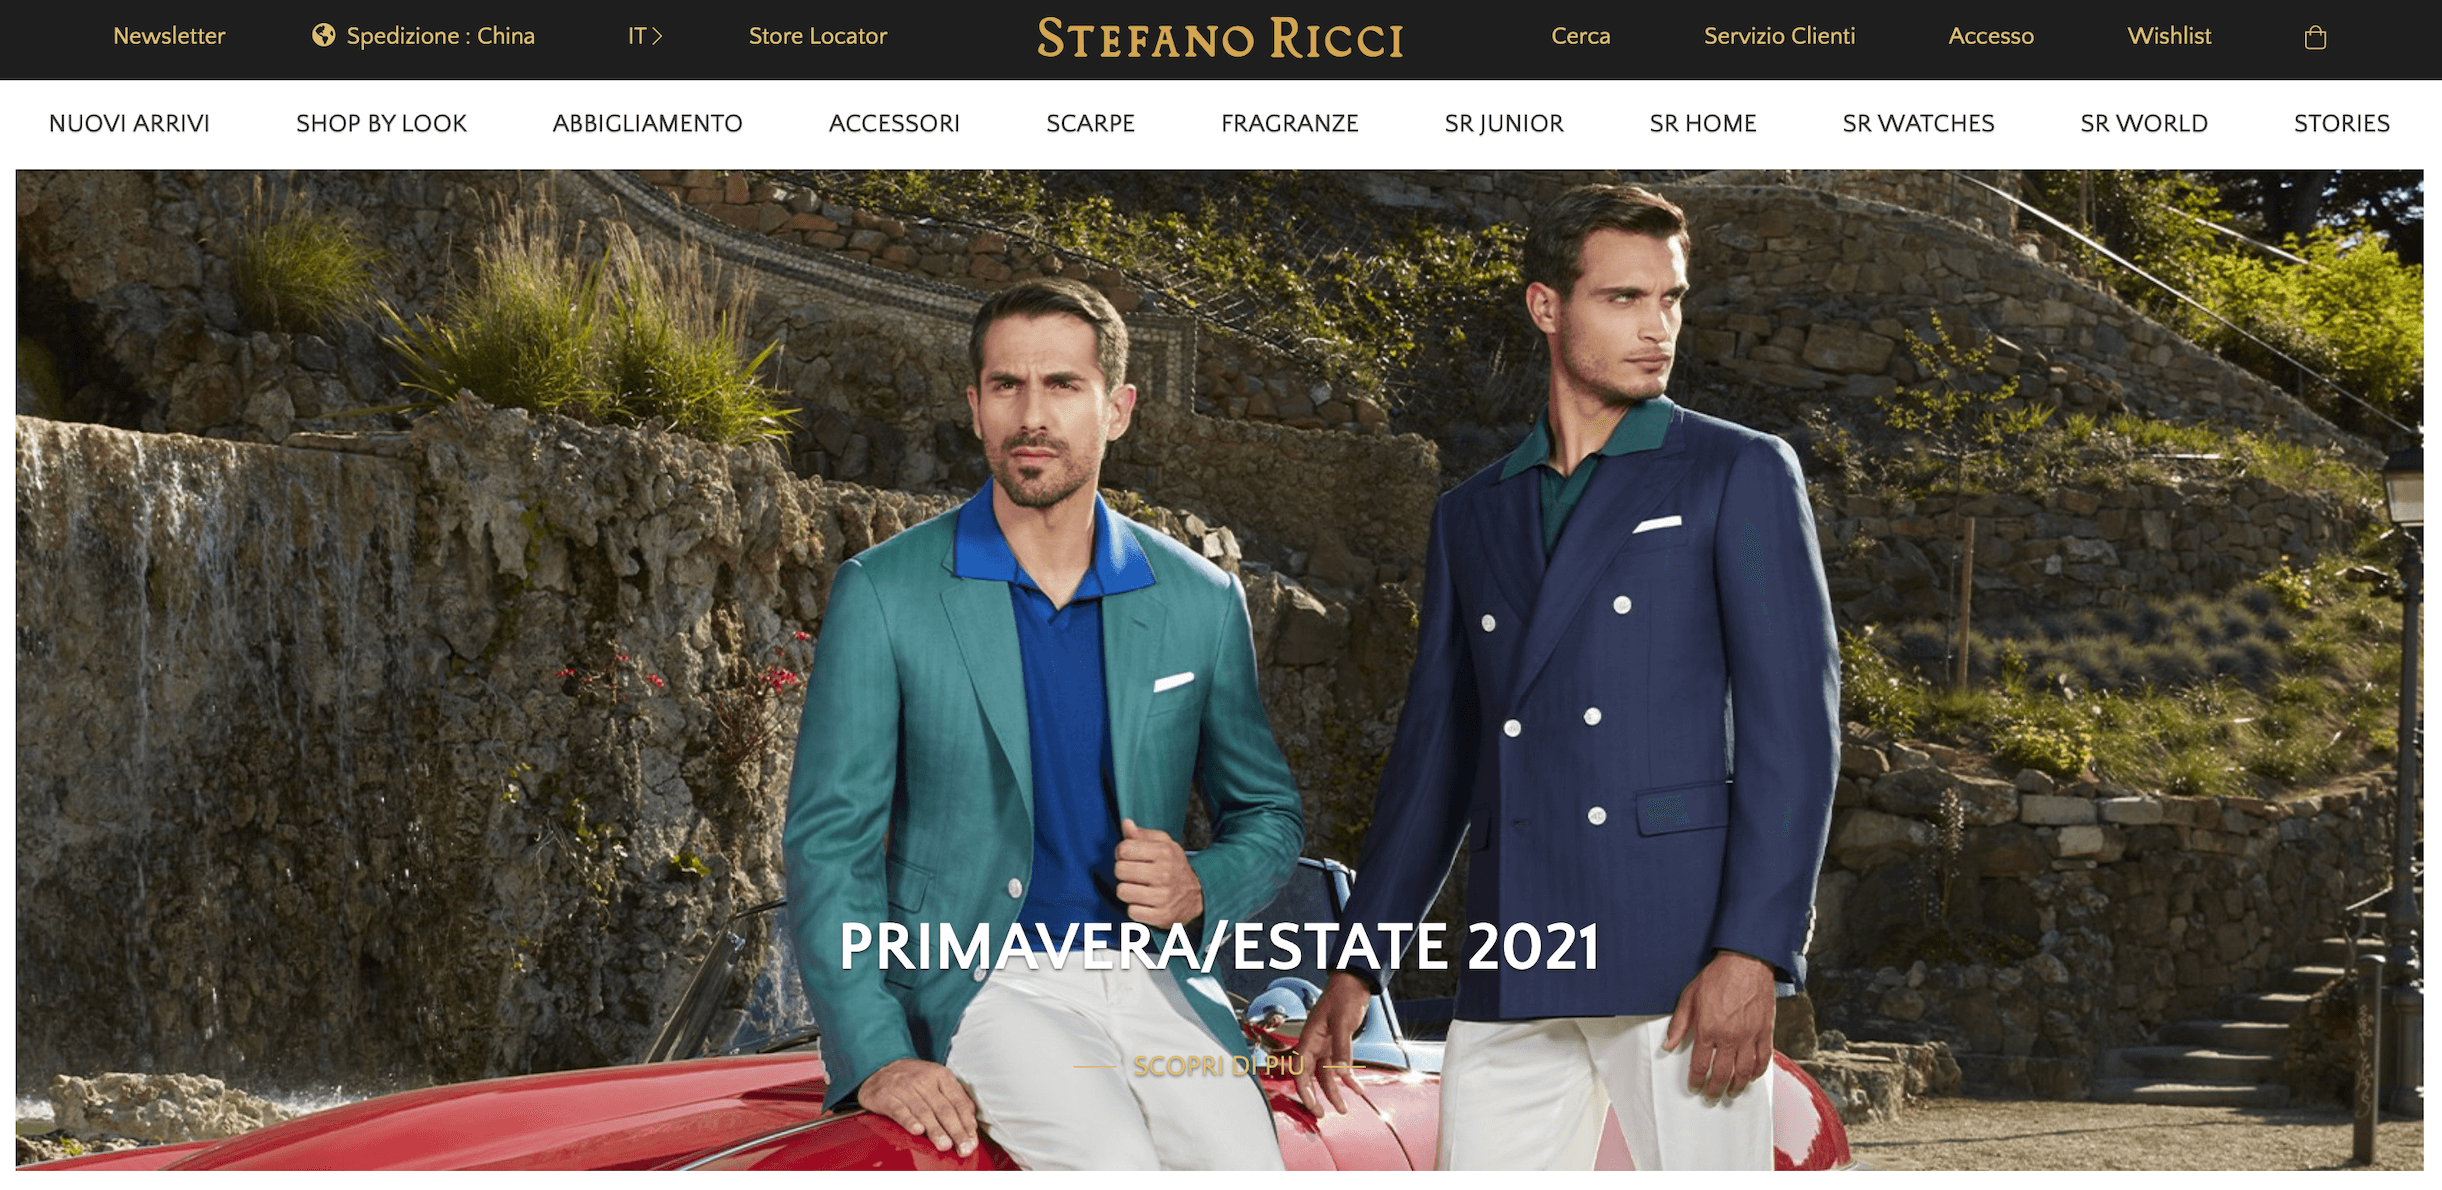 意大利高端男装品牌 Stefano Ricci 2021年业绩复苏